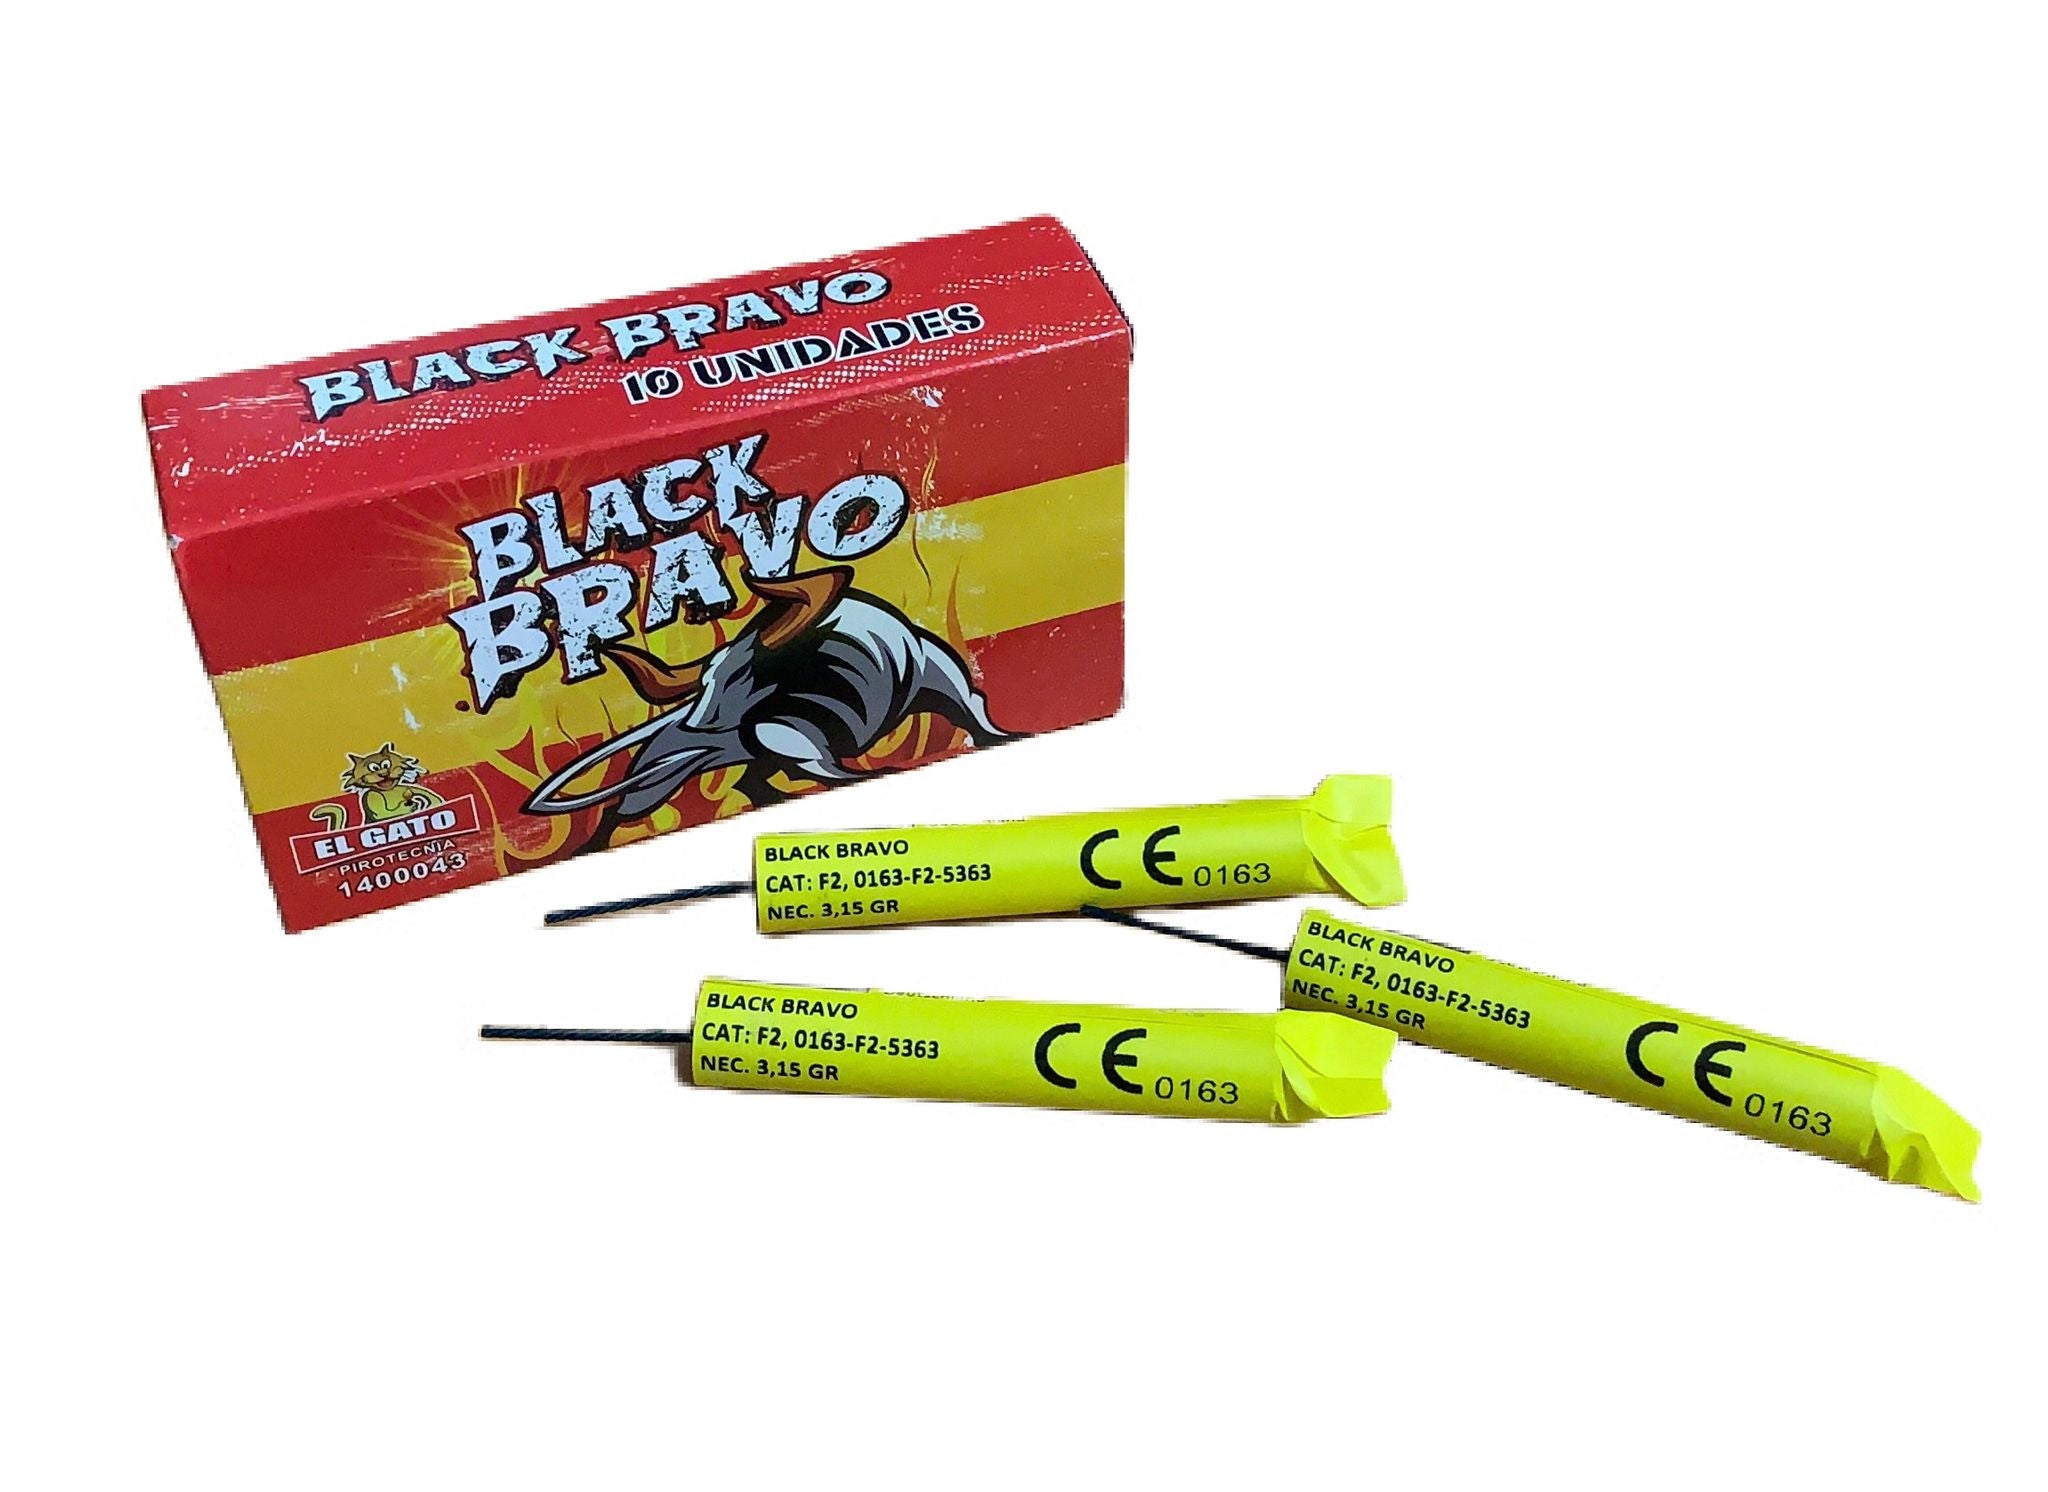 el-gato-black-bravo-10er-pack-knaller_85713d9a-5a44-42c5-b91f-ae7ae9241cfe.jpg